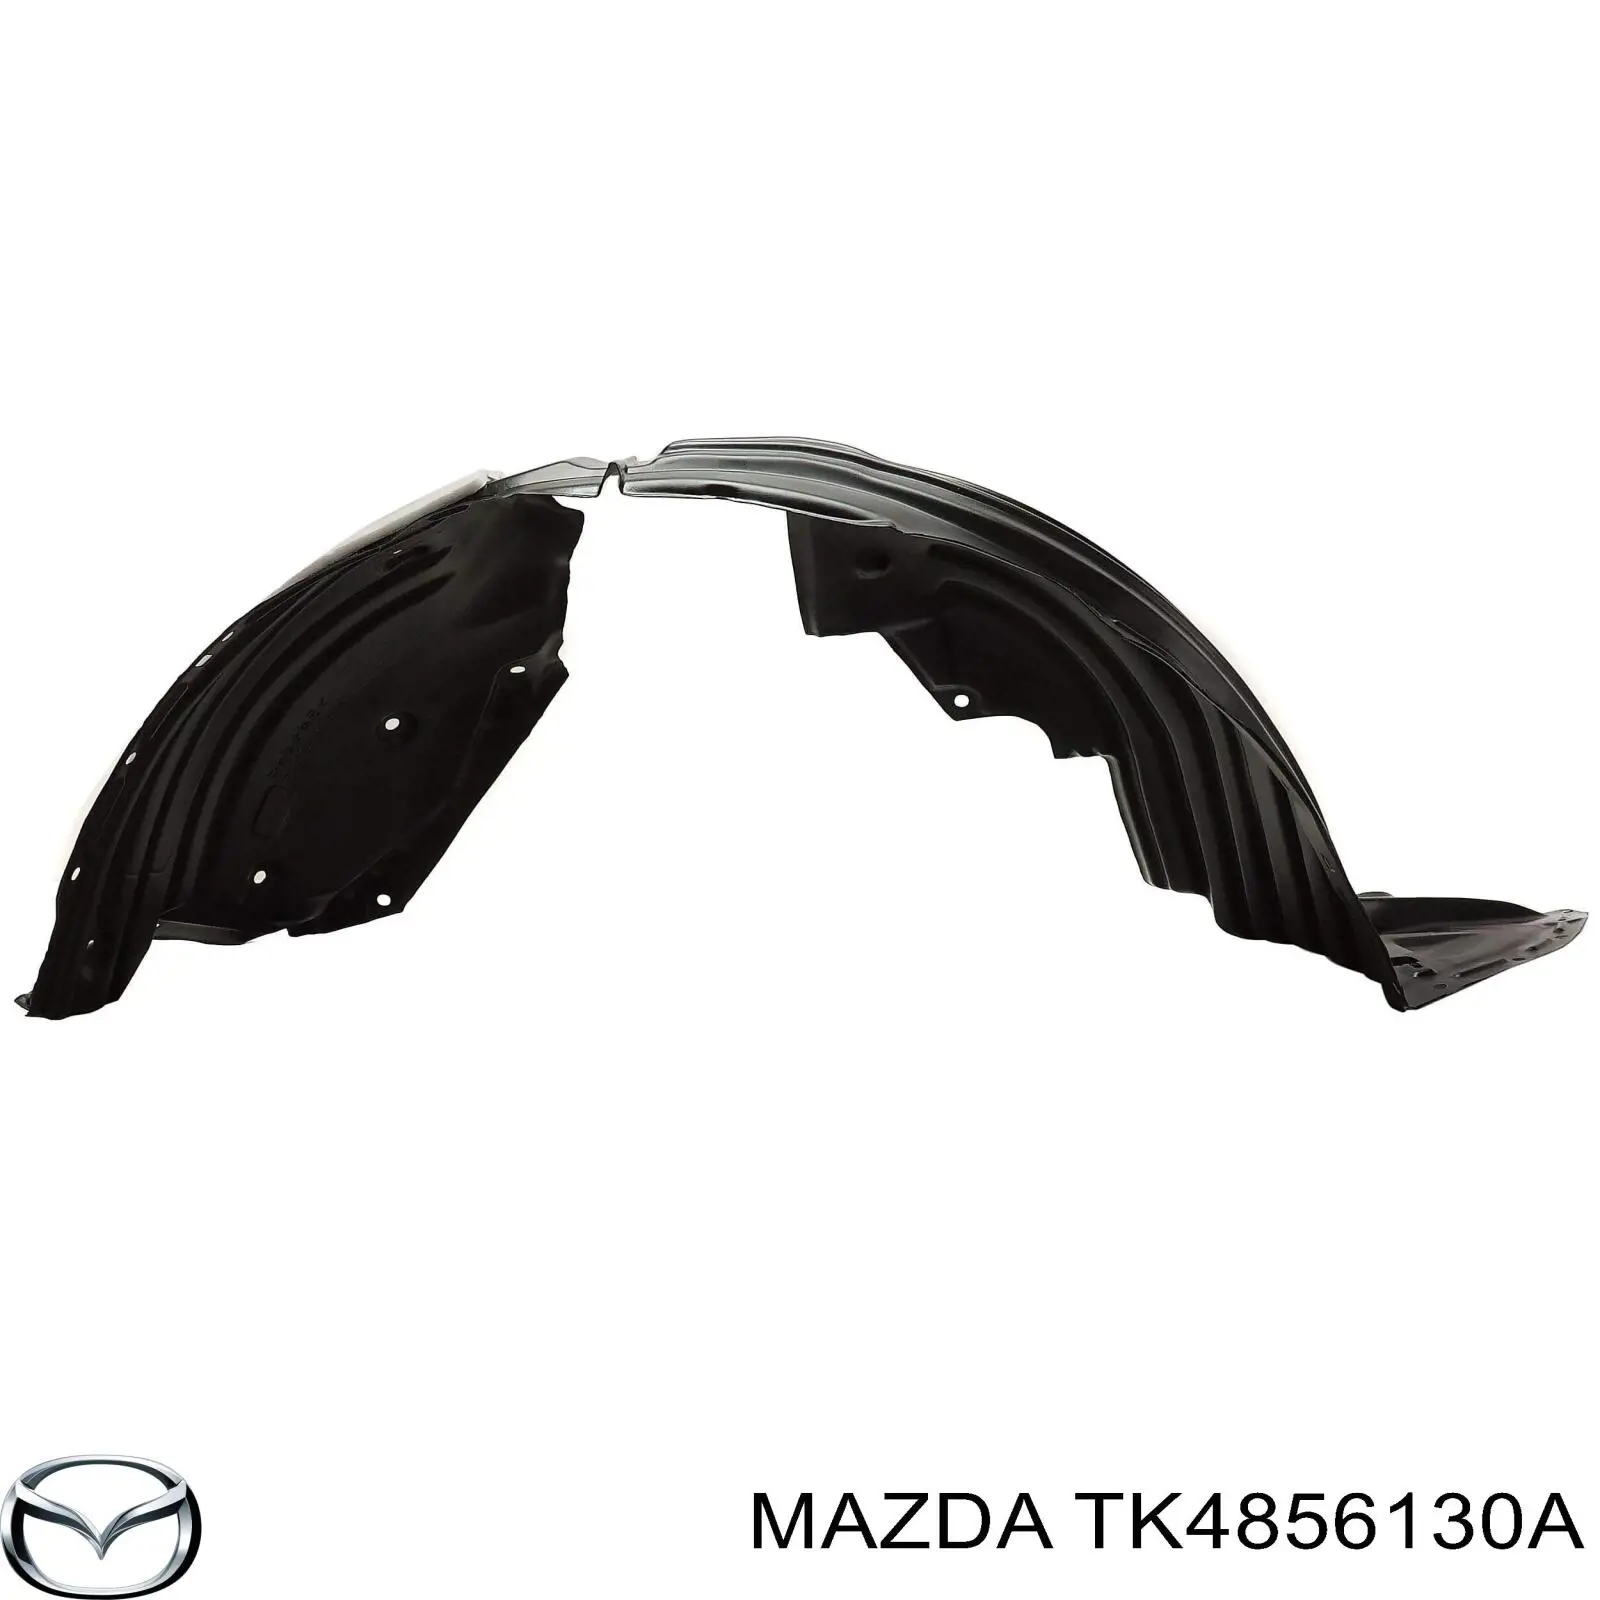 Revestimiento, pasarrueda trasera, derecho para Mazda CX-9 (TC)